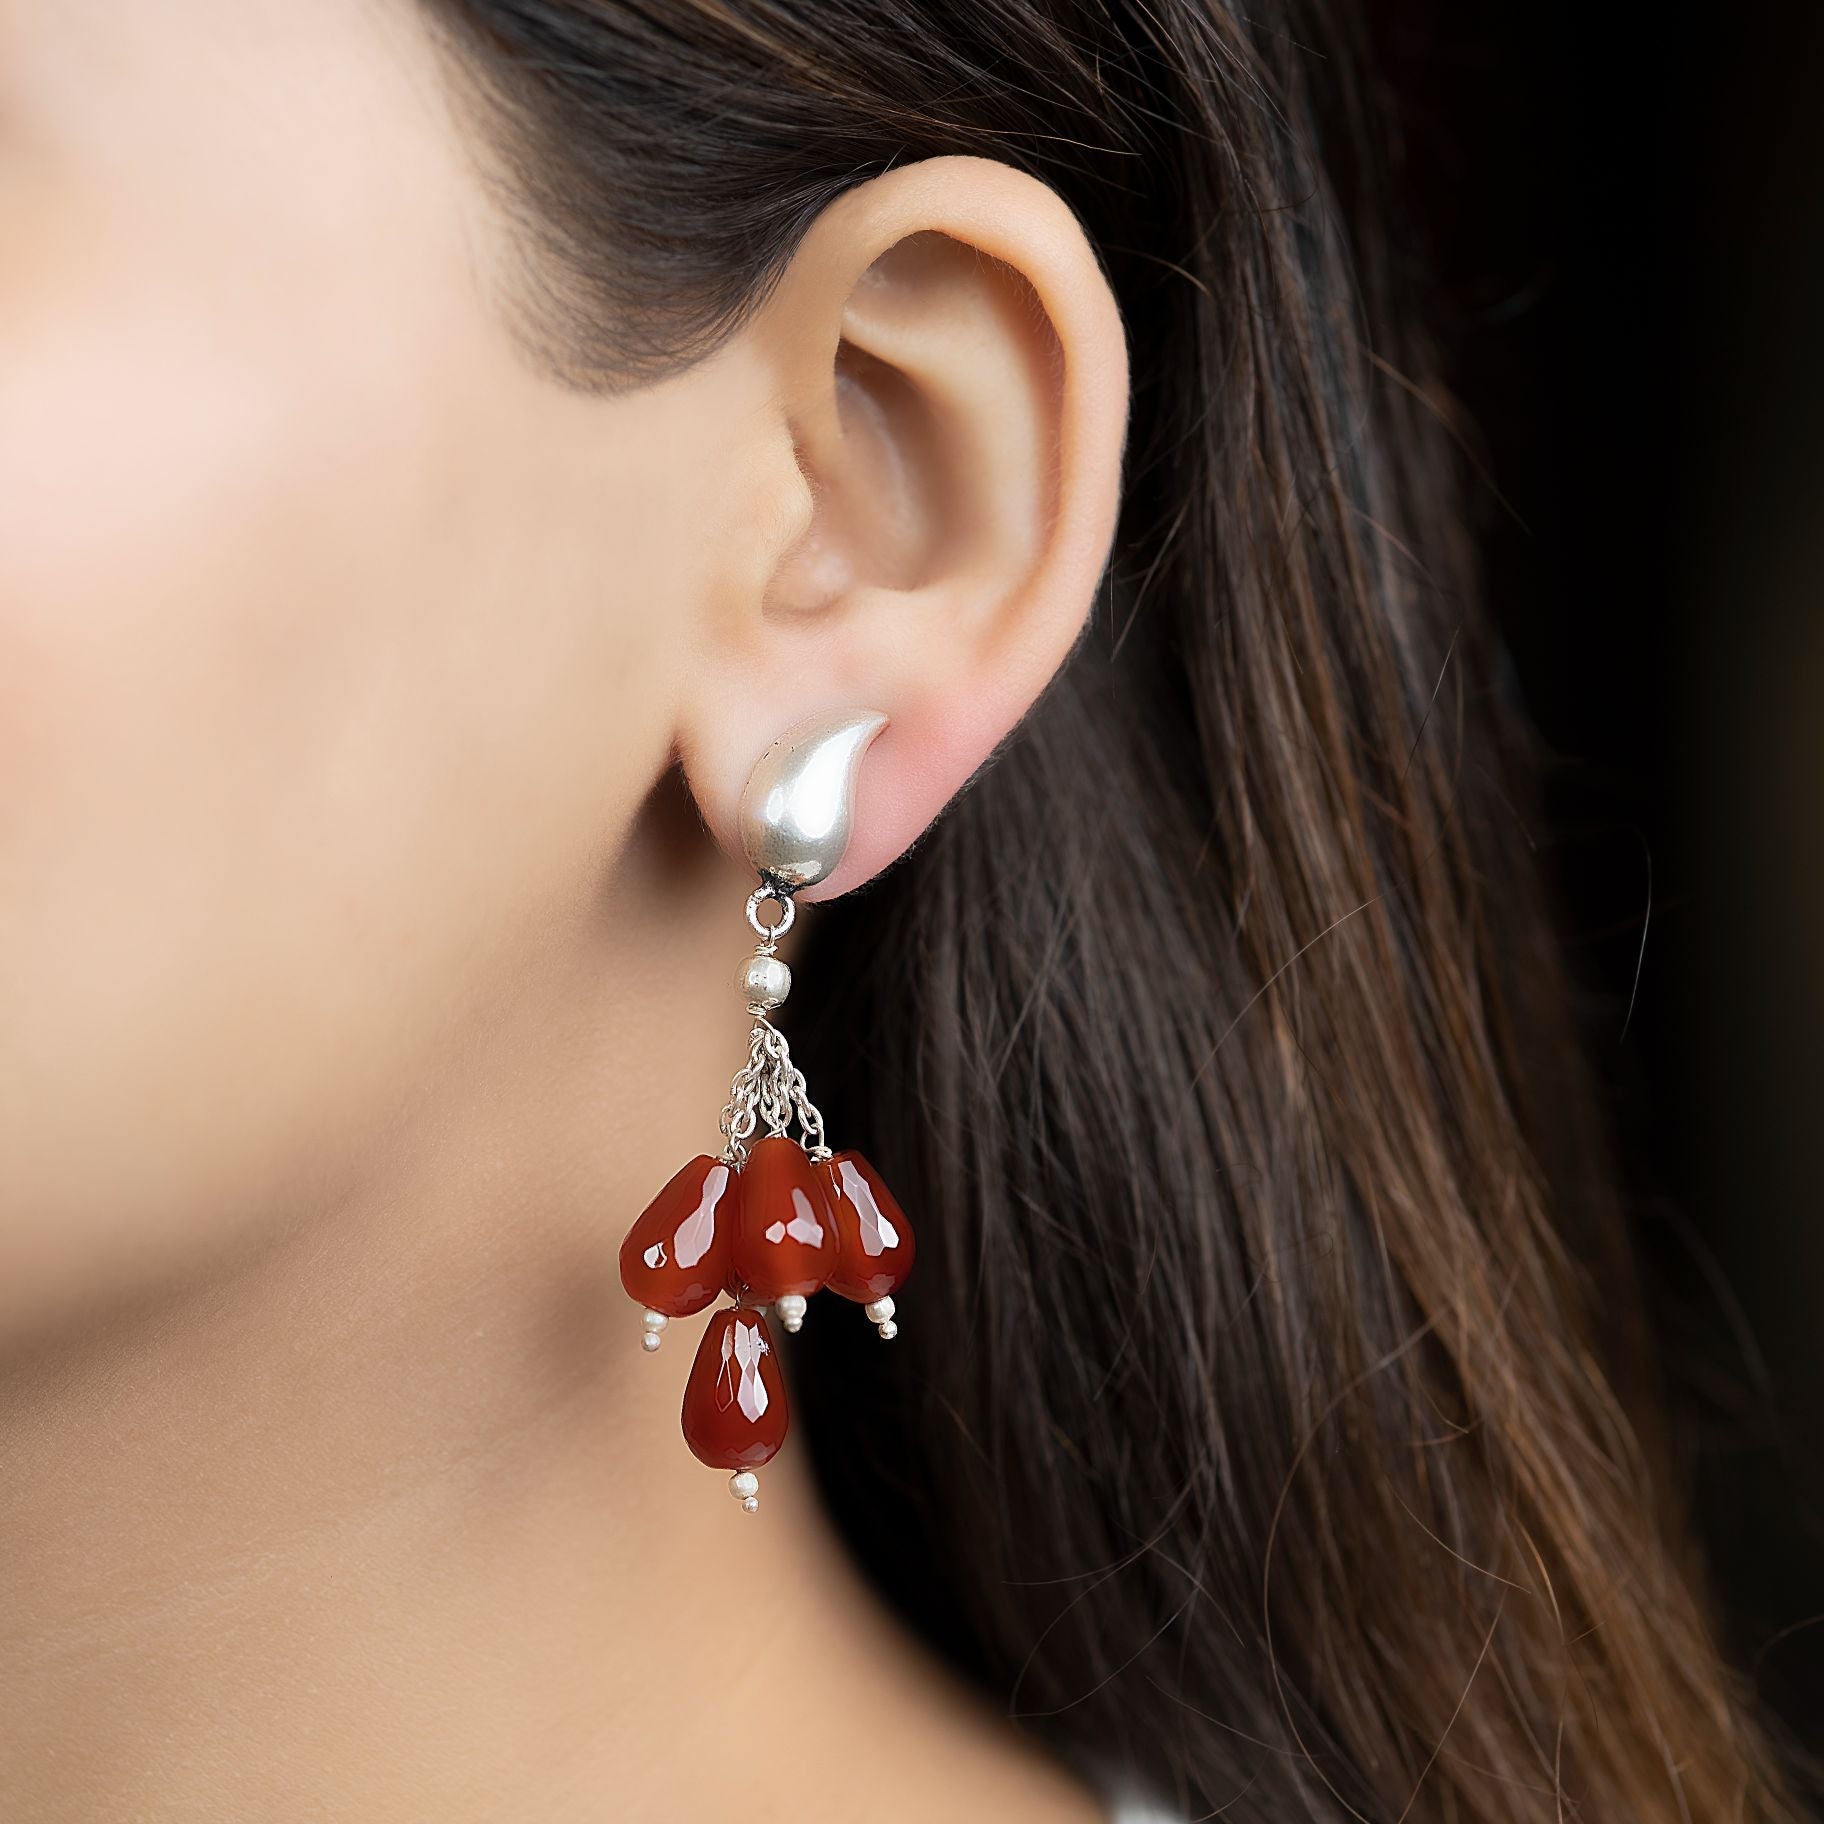 Uniquely Designed Red Pearl Droplets Earrings silverhousebyrj